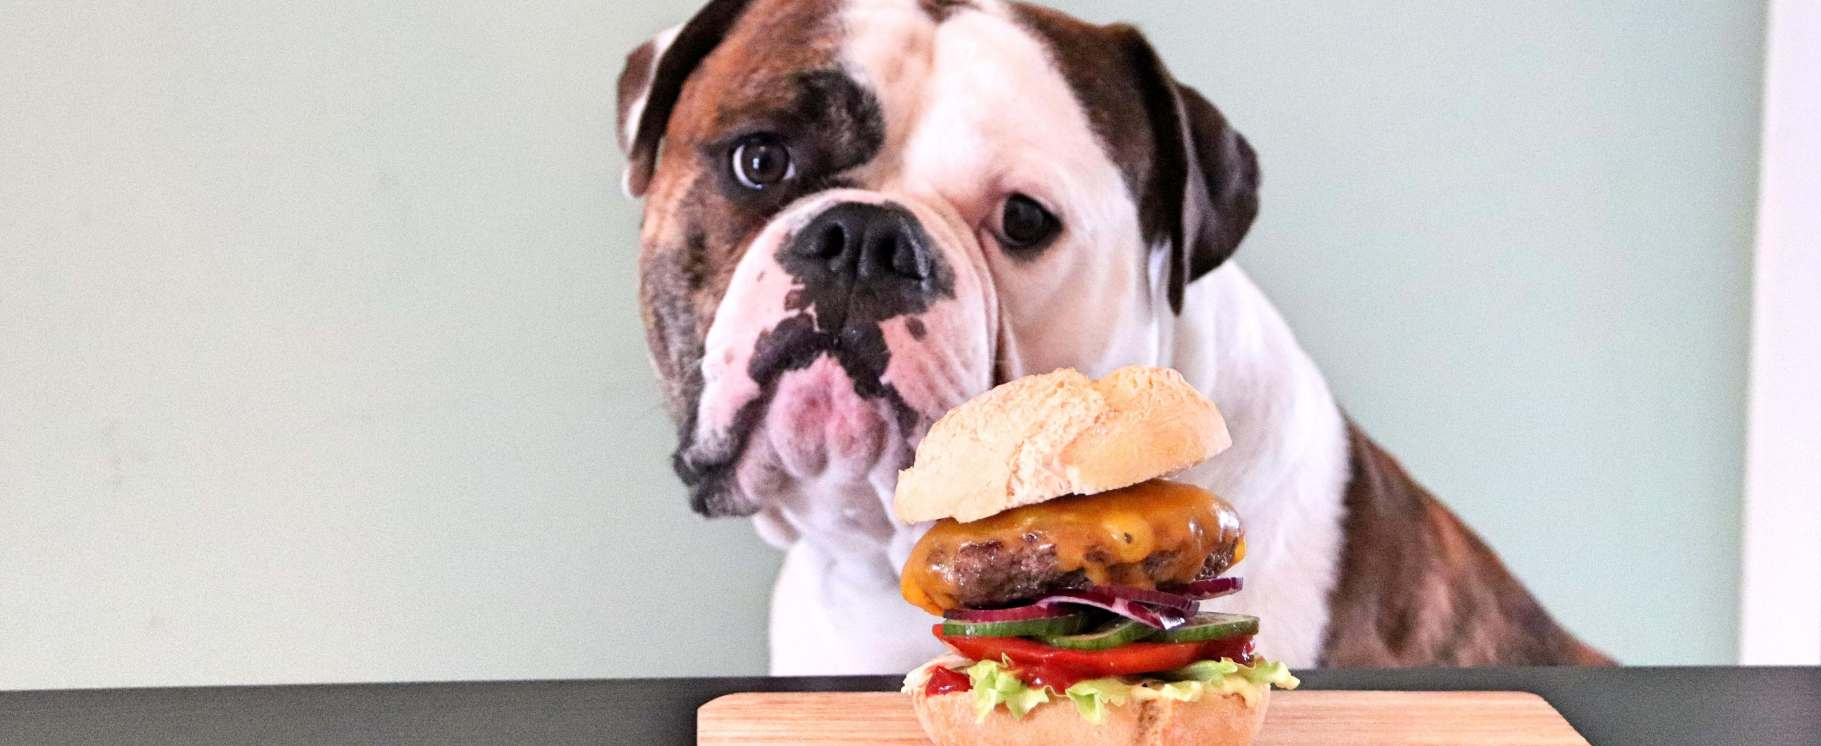 Hund mit Burger